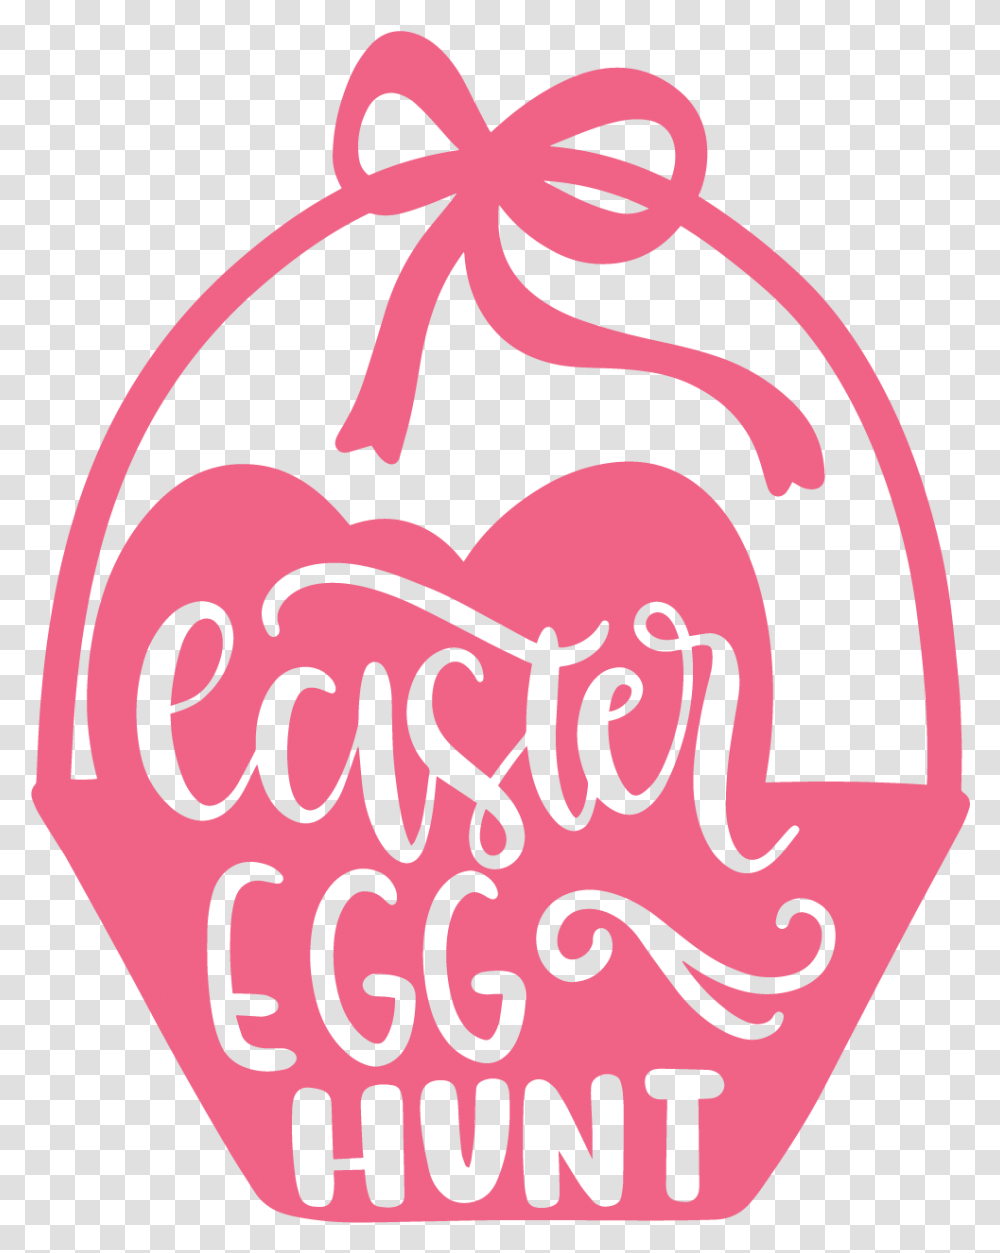 Easter Eggs Illustration, Label, Plant, Food Transparent Png